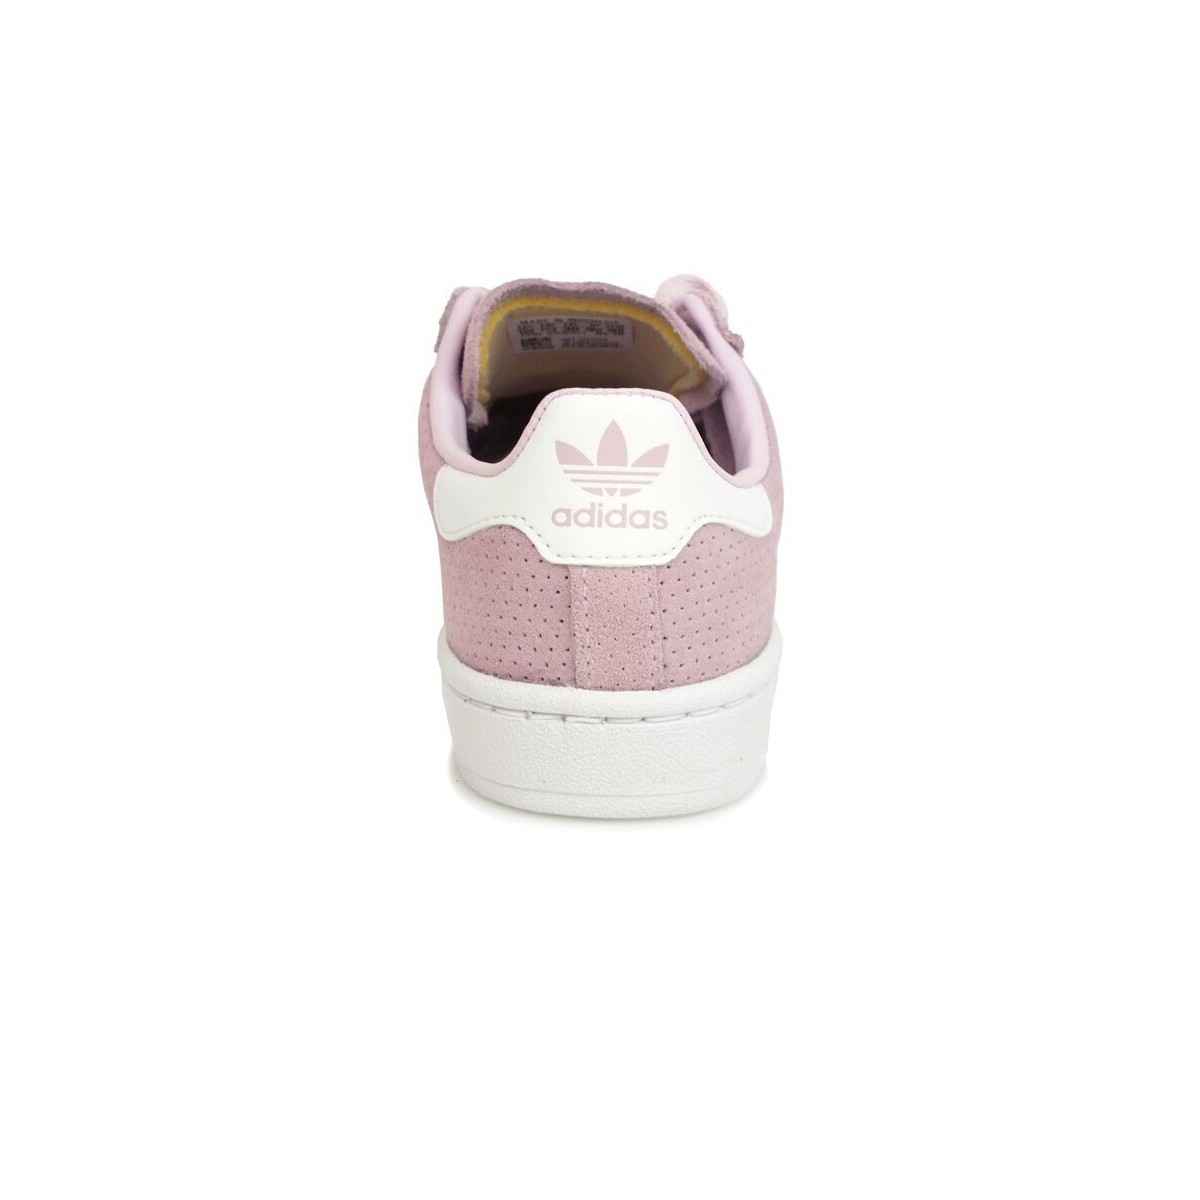 adidas Originals Rose Campus C White Pink CQ2959 rPiO43pI